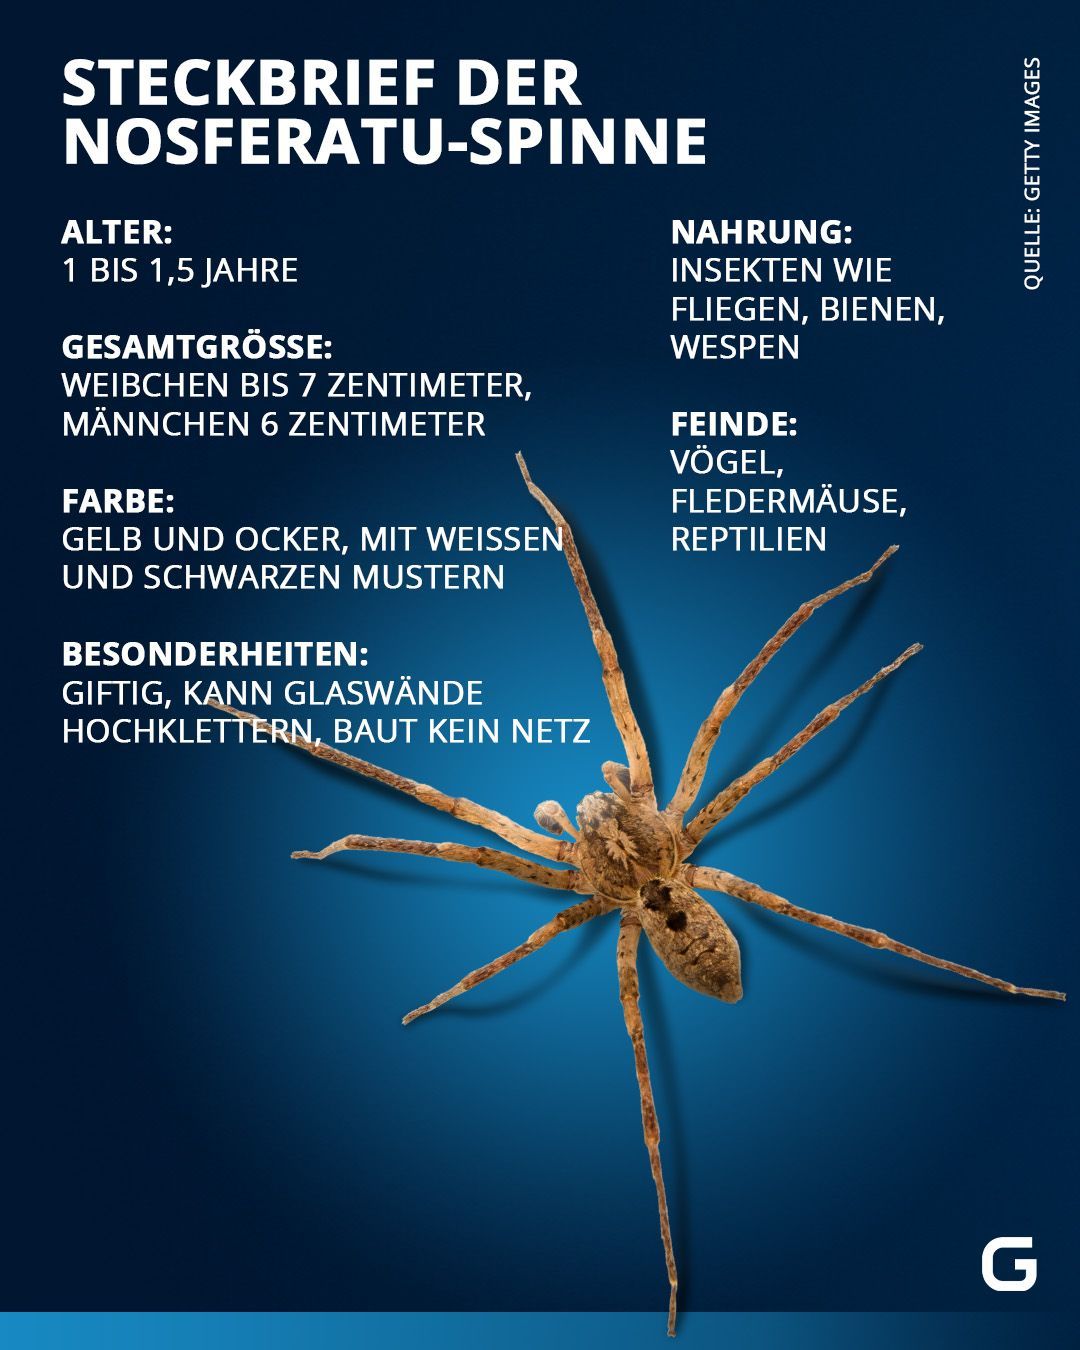 Die Nosferatu-Spinne im Steckbrief: Alle Infos zur Gruselspinne